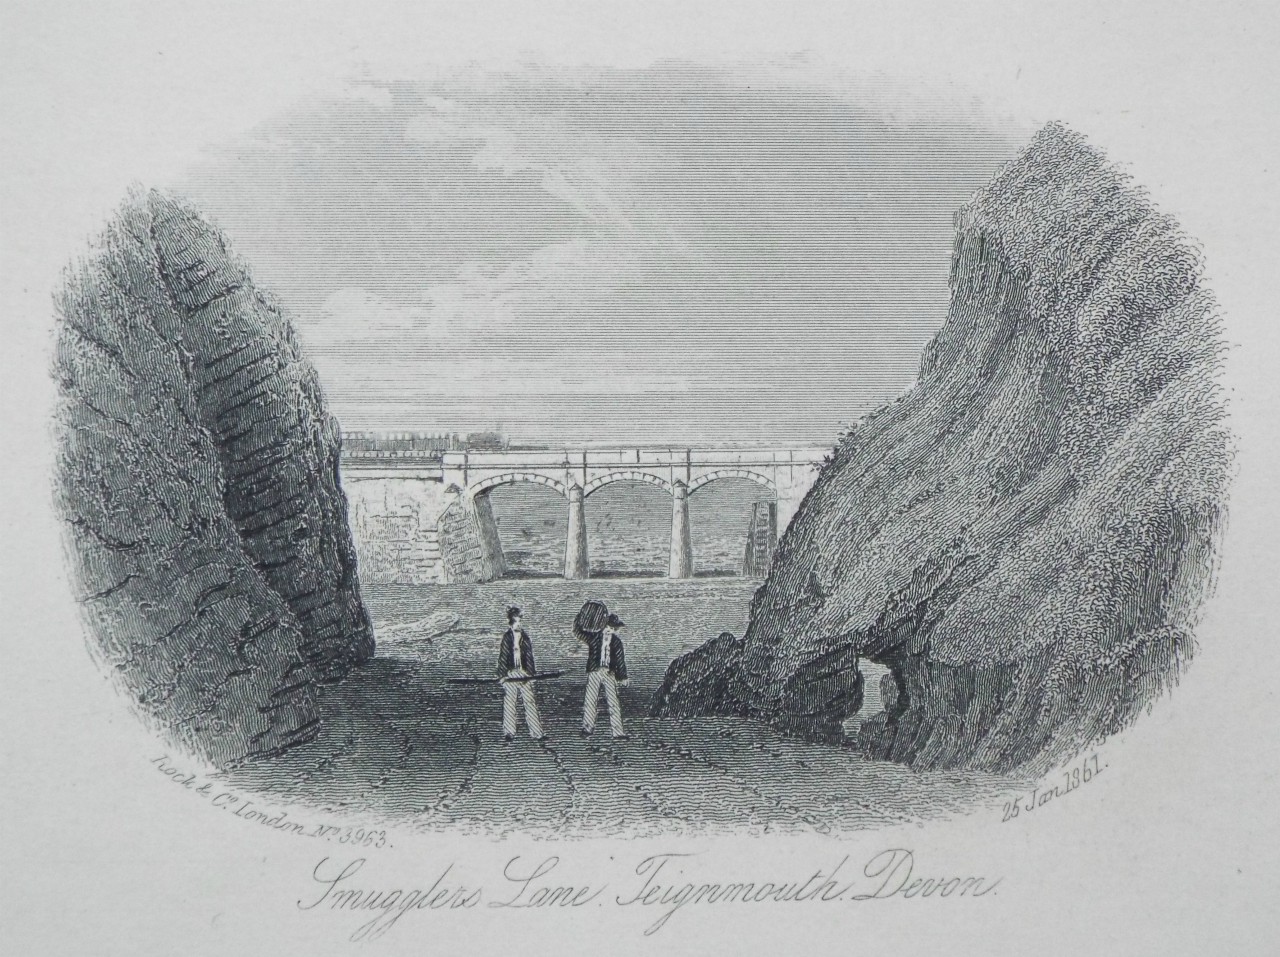 Steel Vignette - Smugglers Lane, Teignmouth, Devon. - Rock